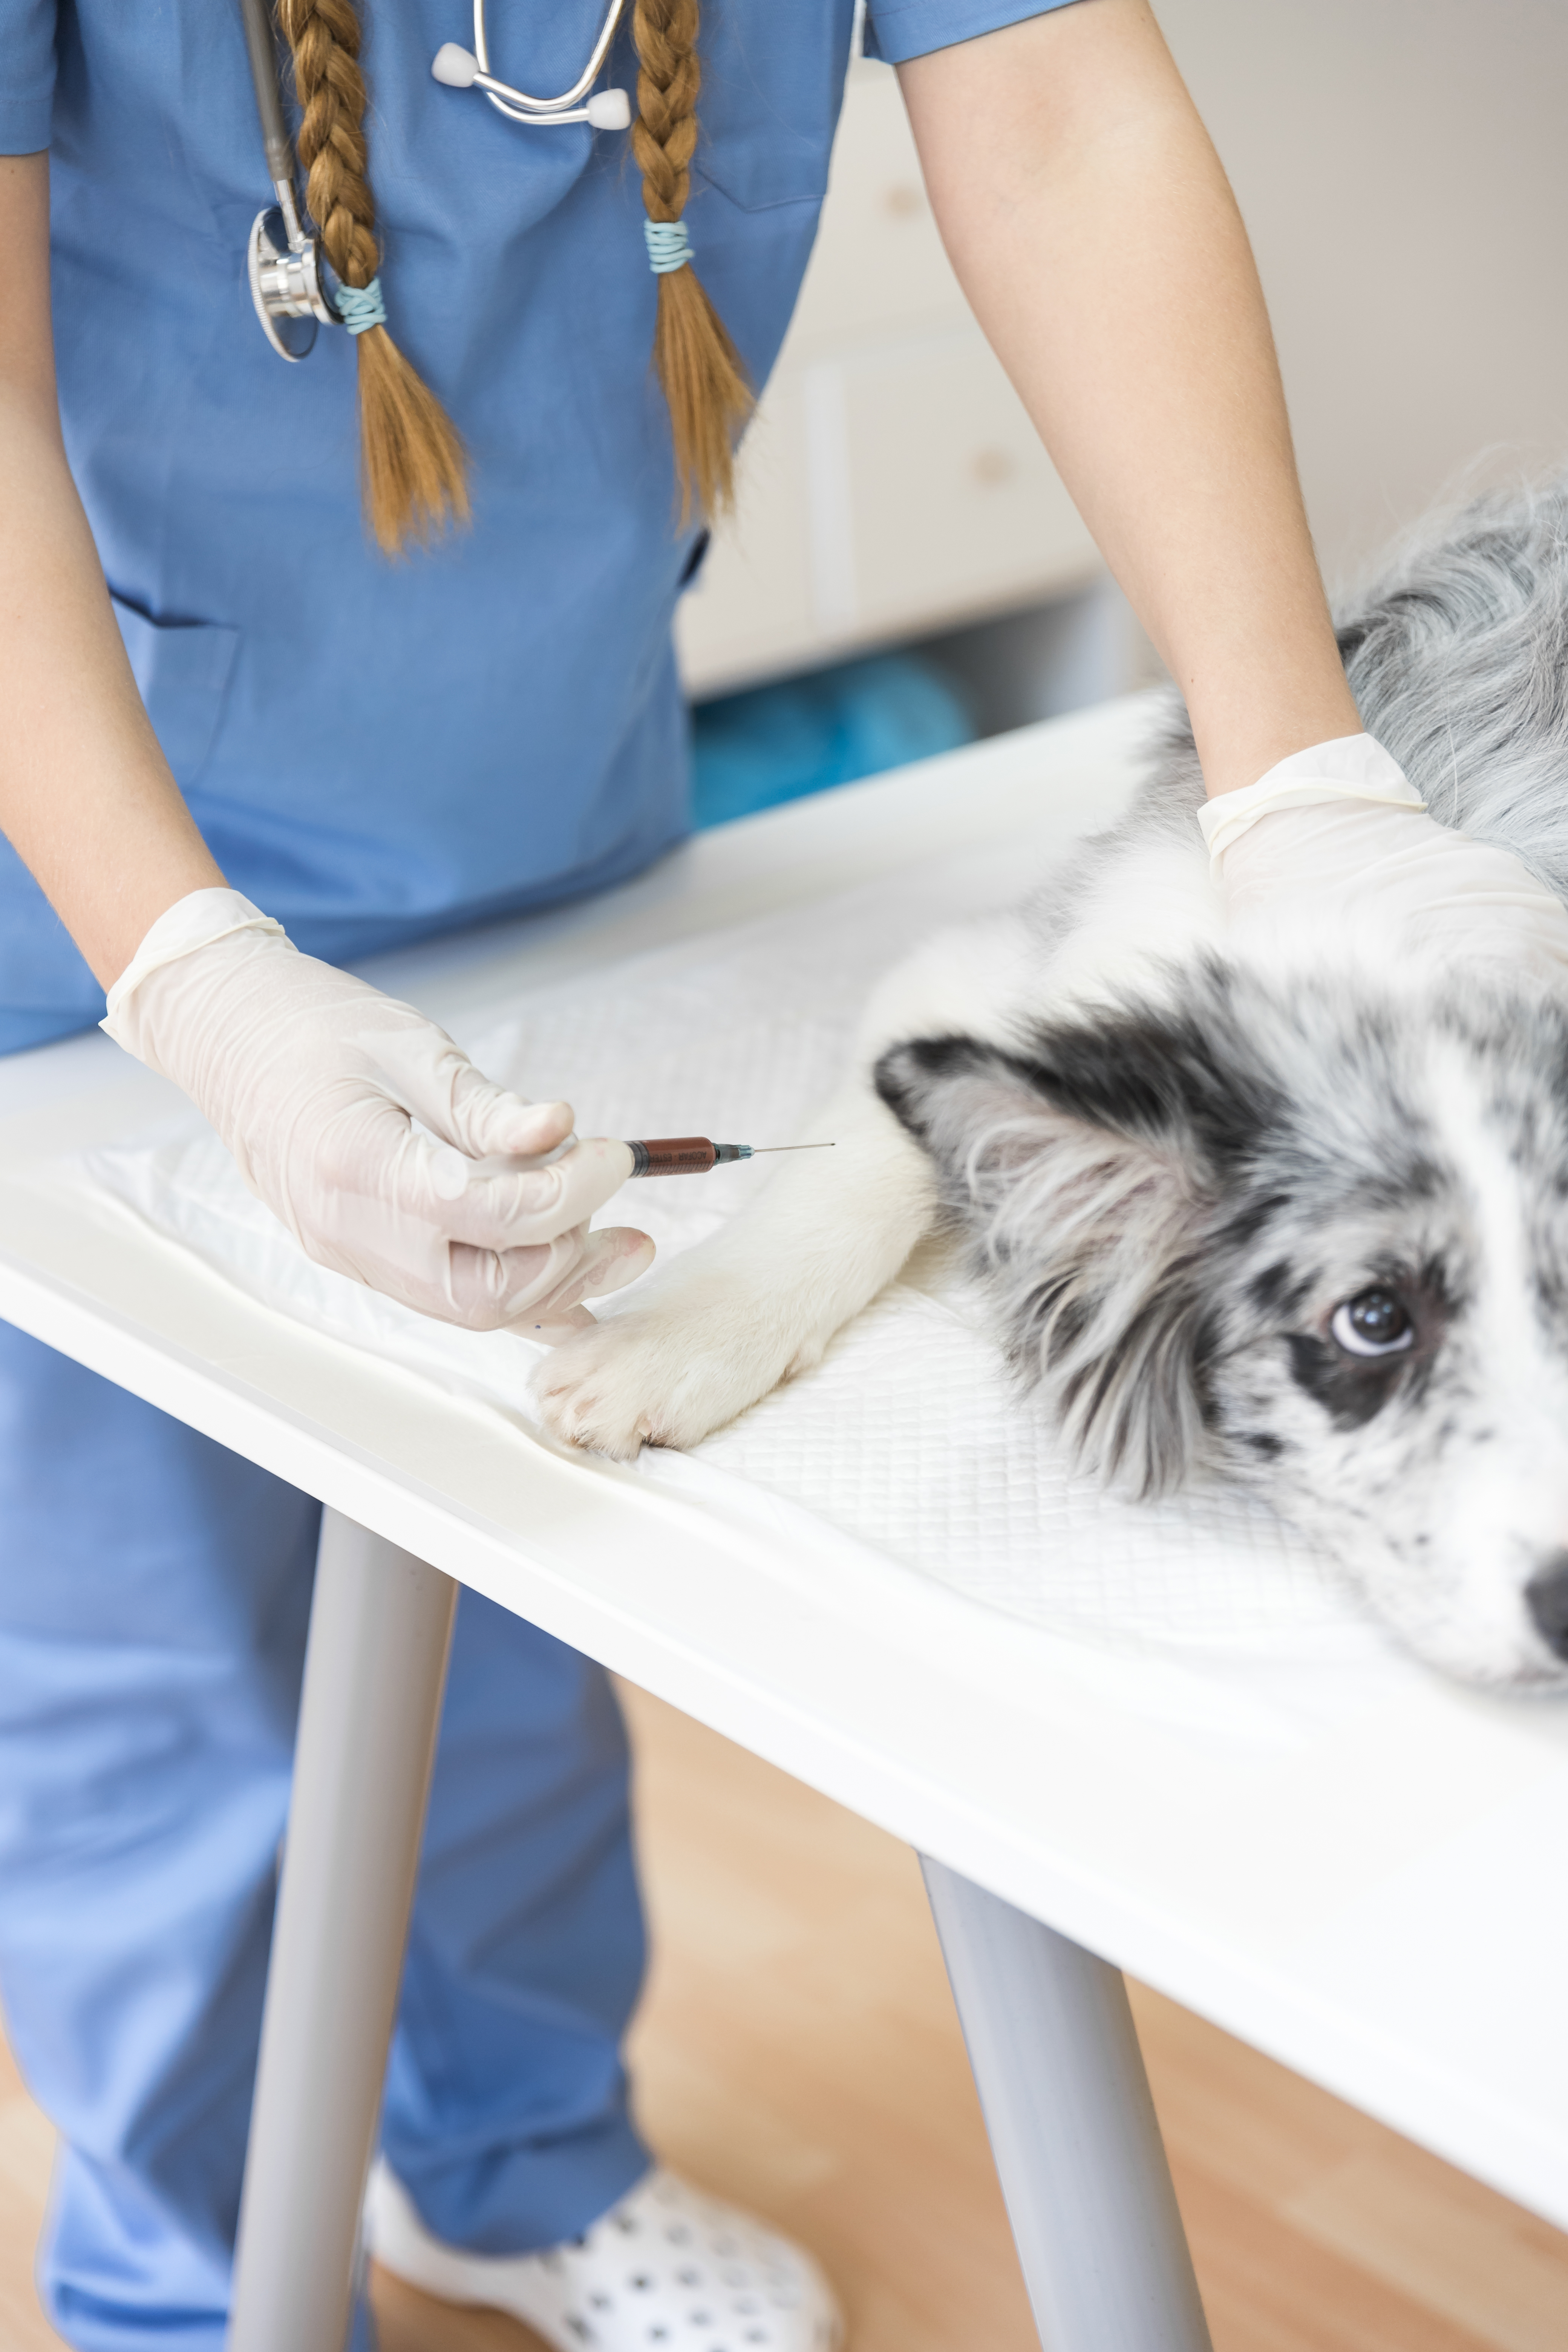 110 mil dosis de vacuna antirrábica estarán disponibles para aplicar a perros y gatos durante la actual vigencia